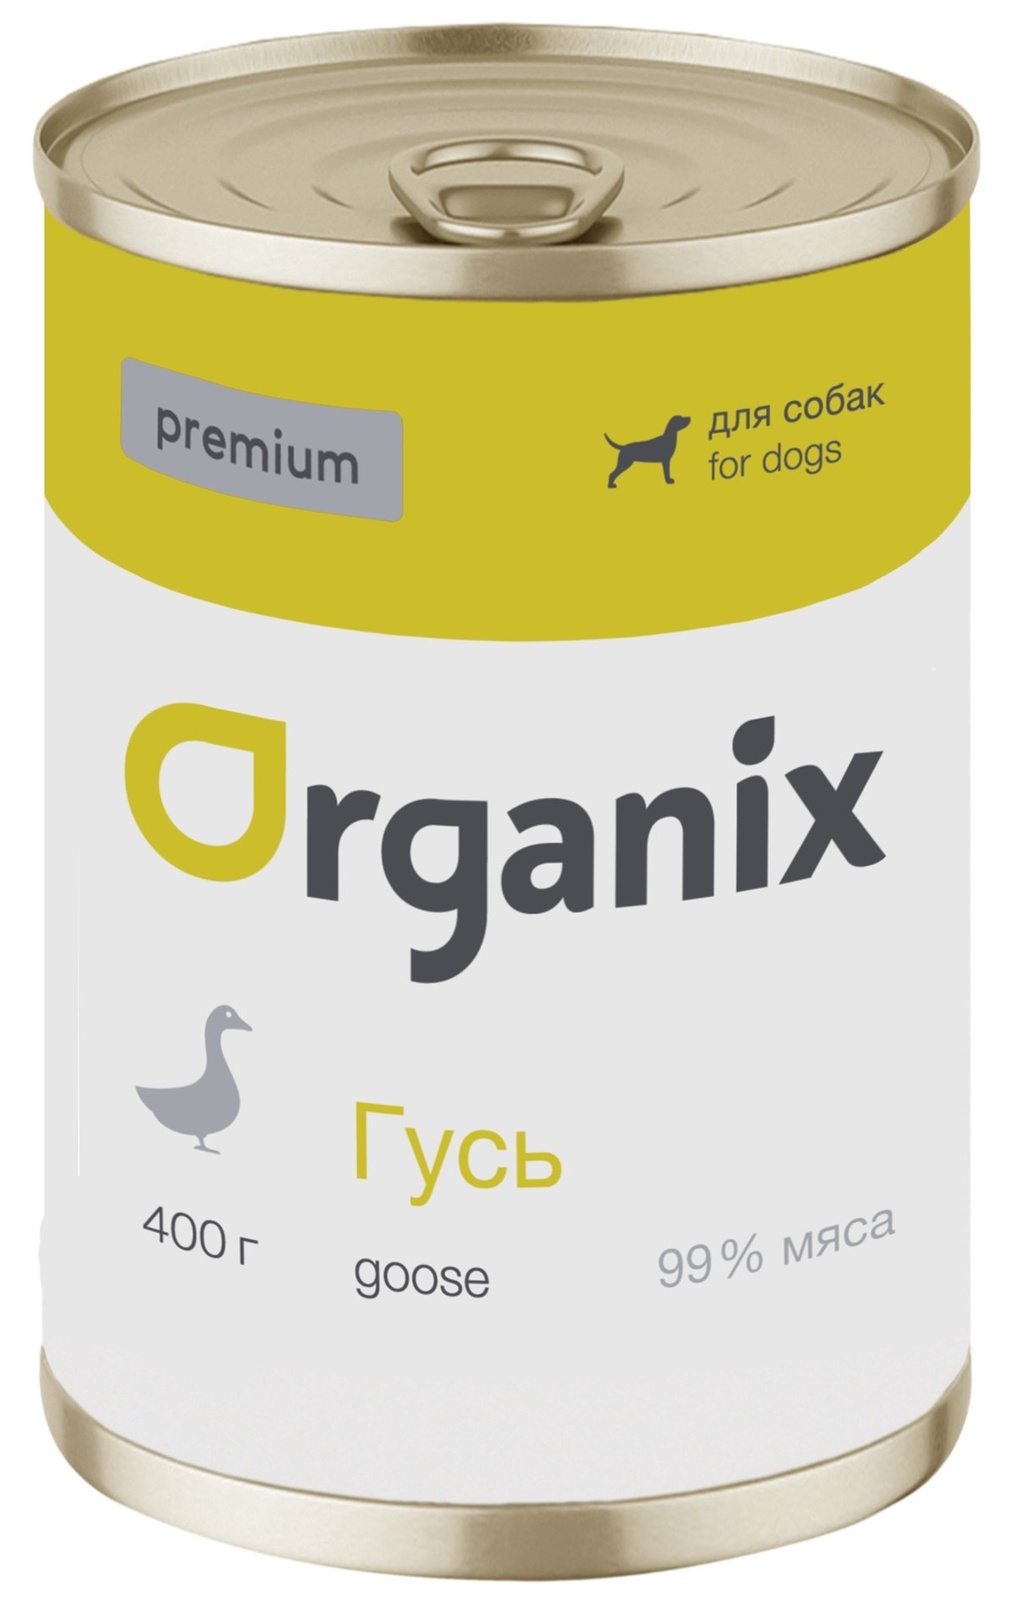 Organix консервы Organix монобелковые премиум консервы для собак, с гусем (400 г) 42936